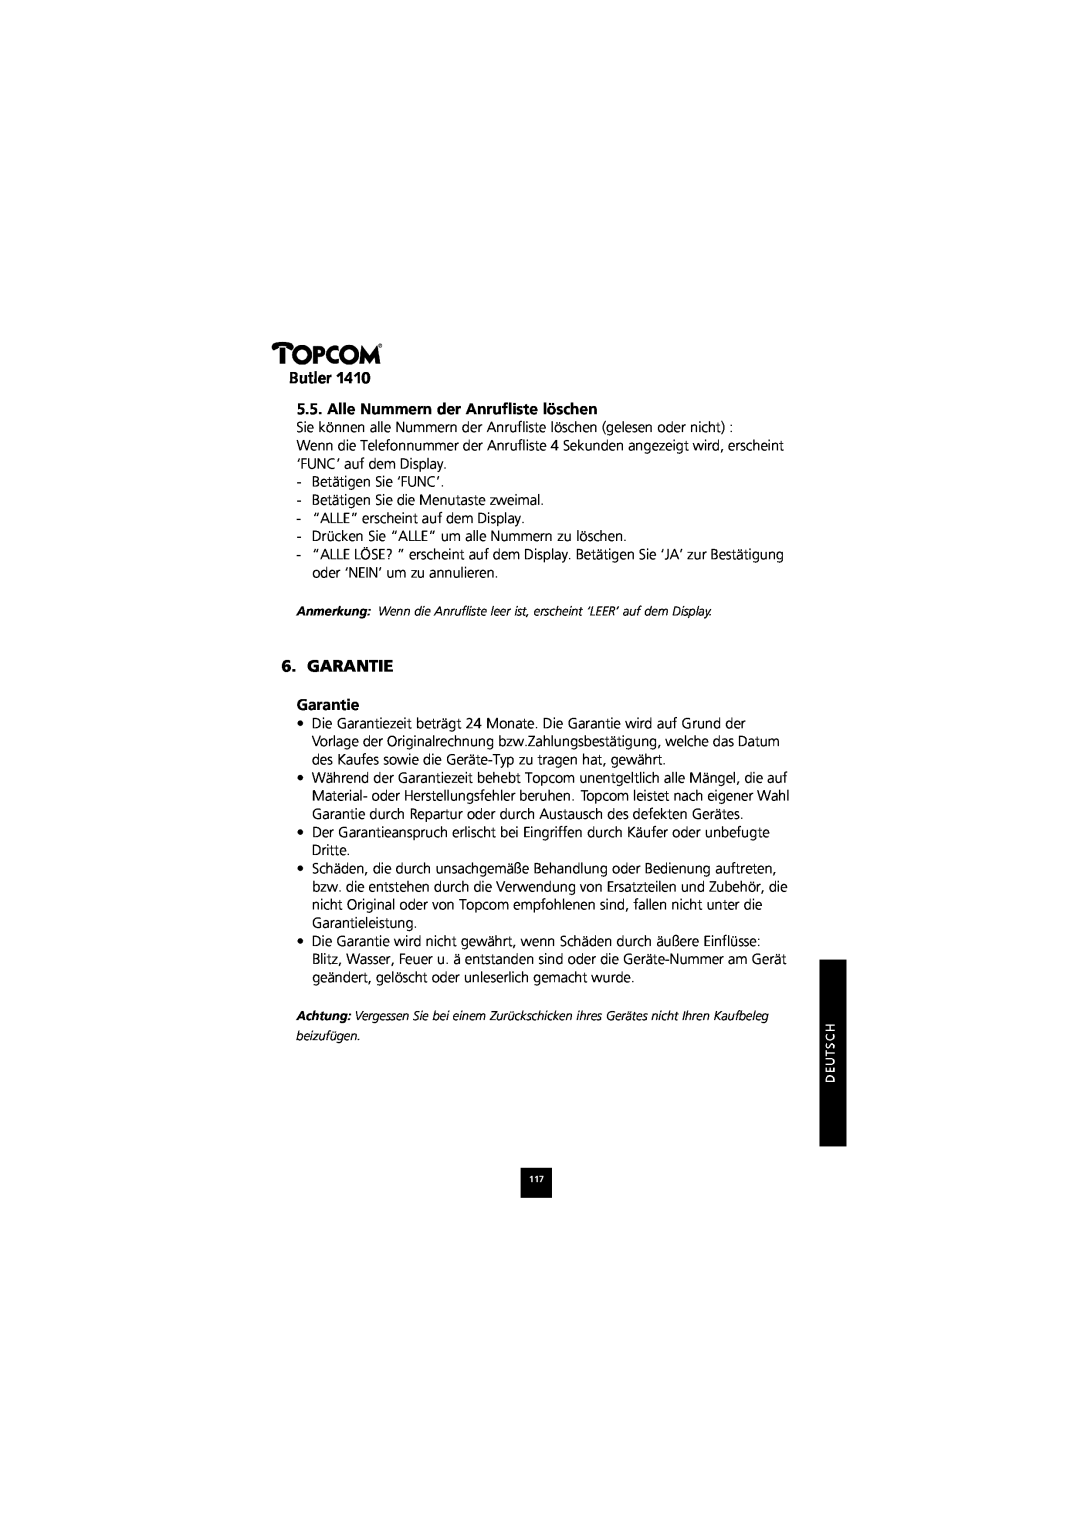 Topcom 1410 manual Alle Nummern der Anrufliste löschen, Garantie, Butler 